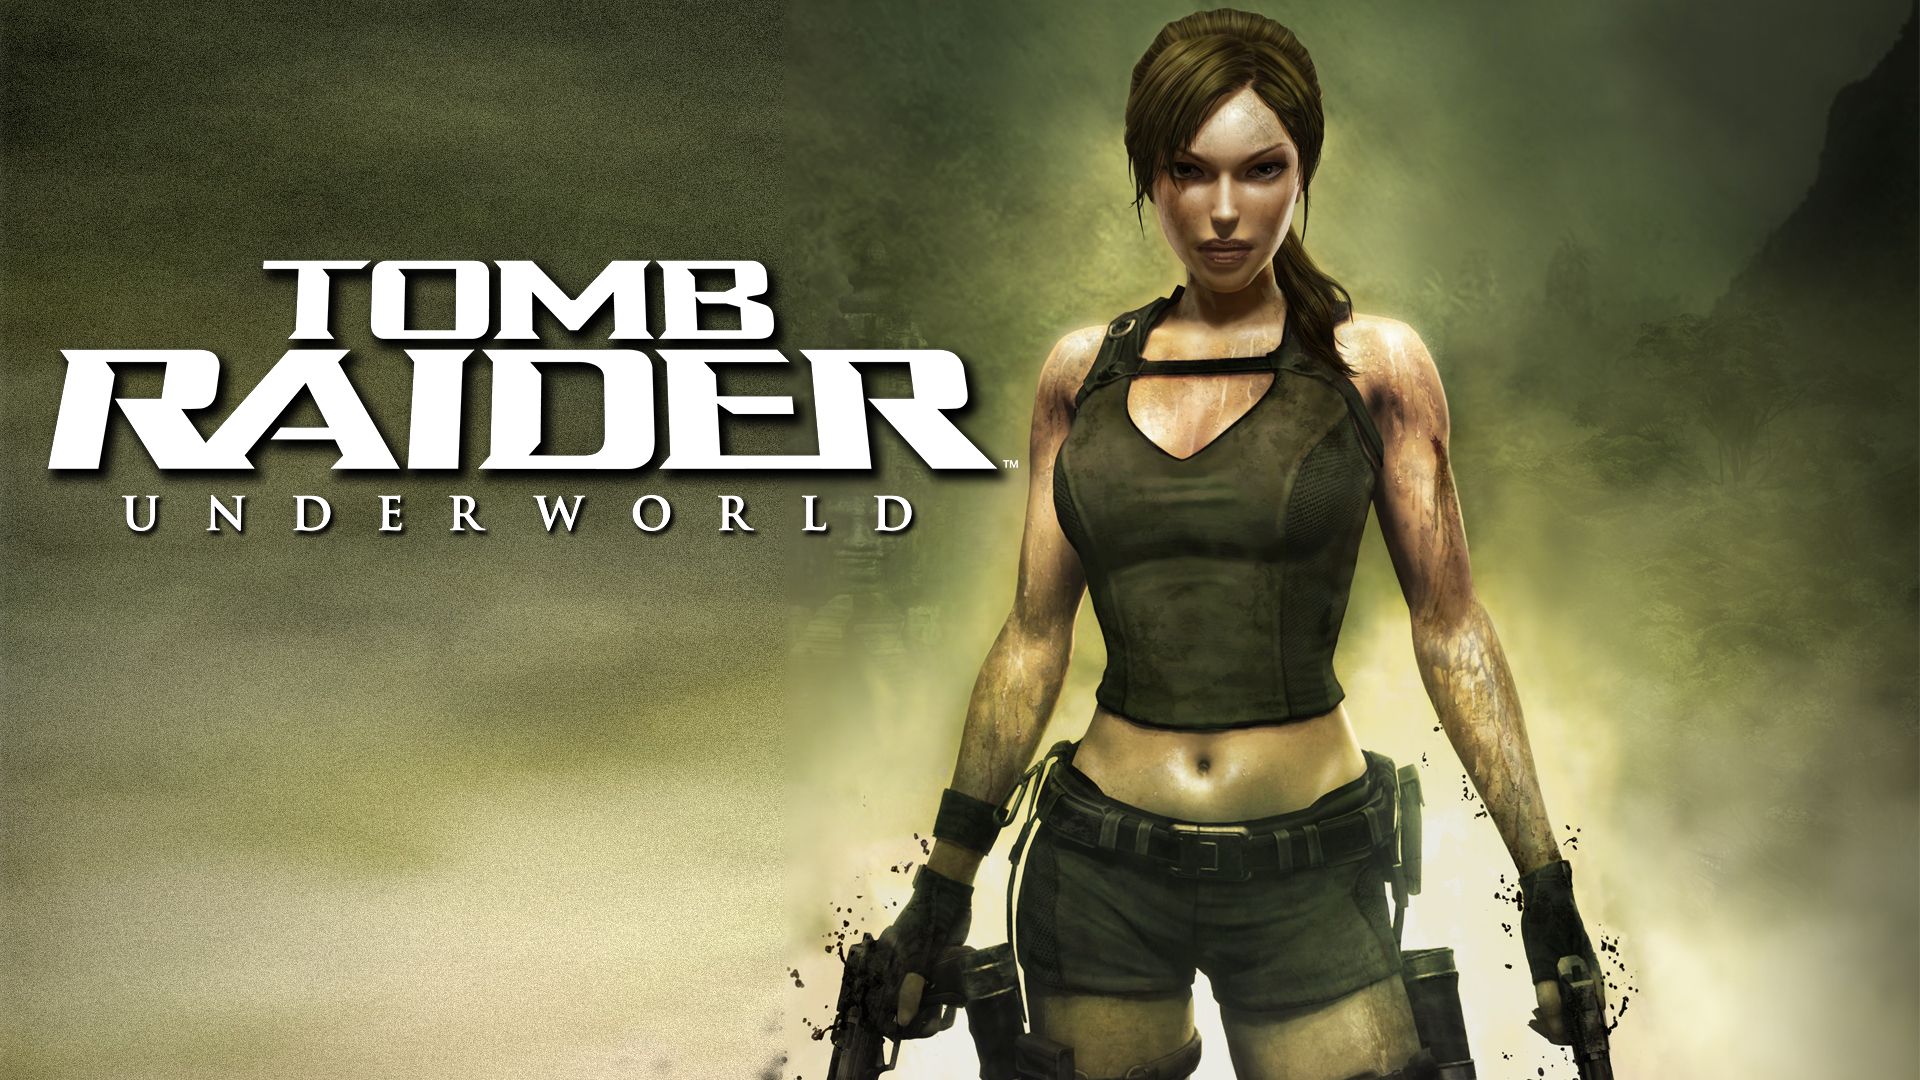 Прохождение игры Tomb Raider: Underworld # 13. HD - Full 1080p. (Русская версия игры)